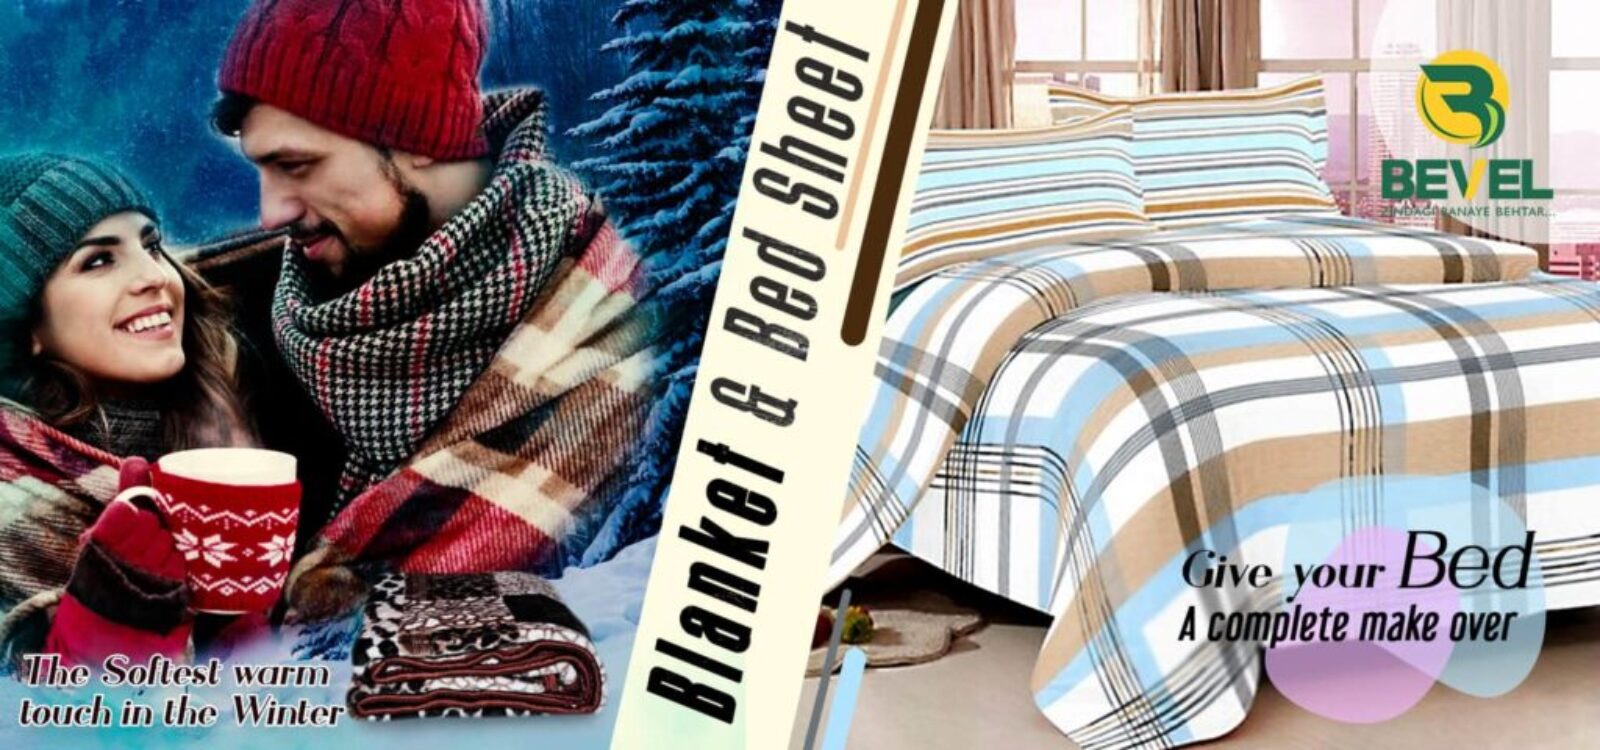 BED SHEET & BLANKET WEB BANNER-min (1)